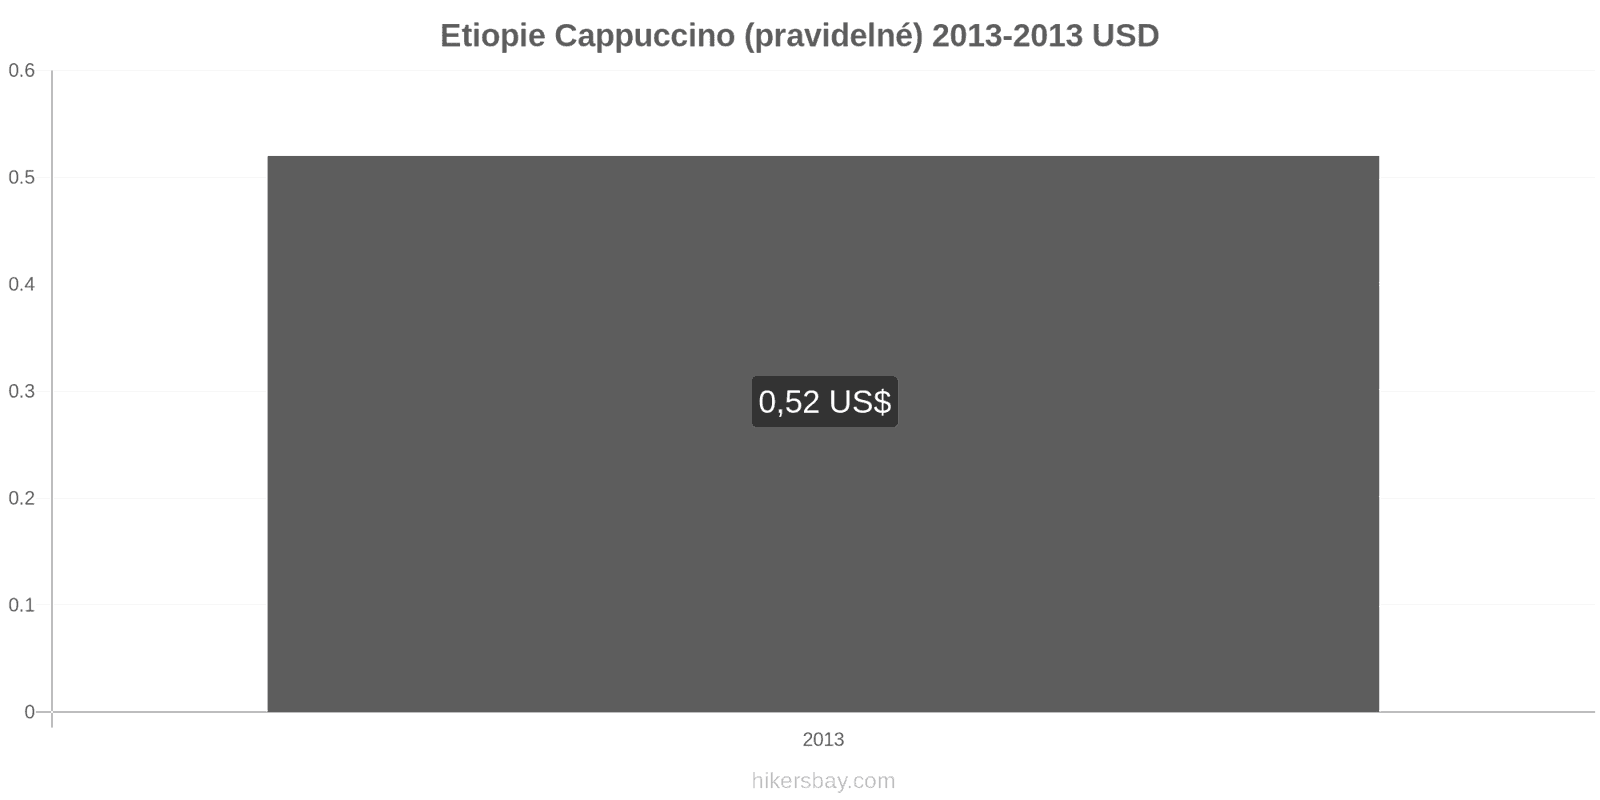 Etiopie změny cen Cappuccino hikersbay.com